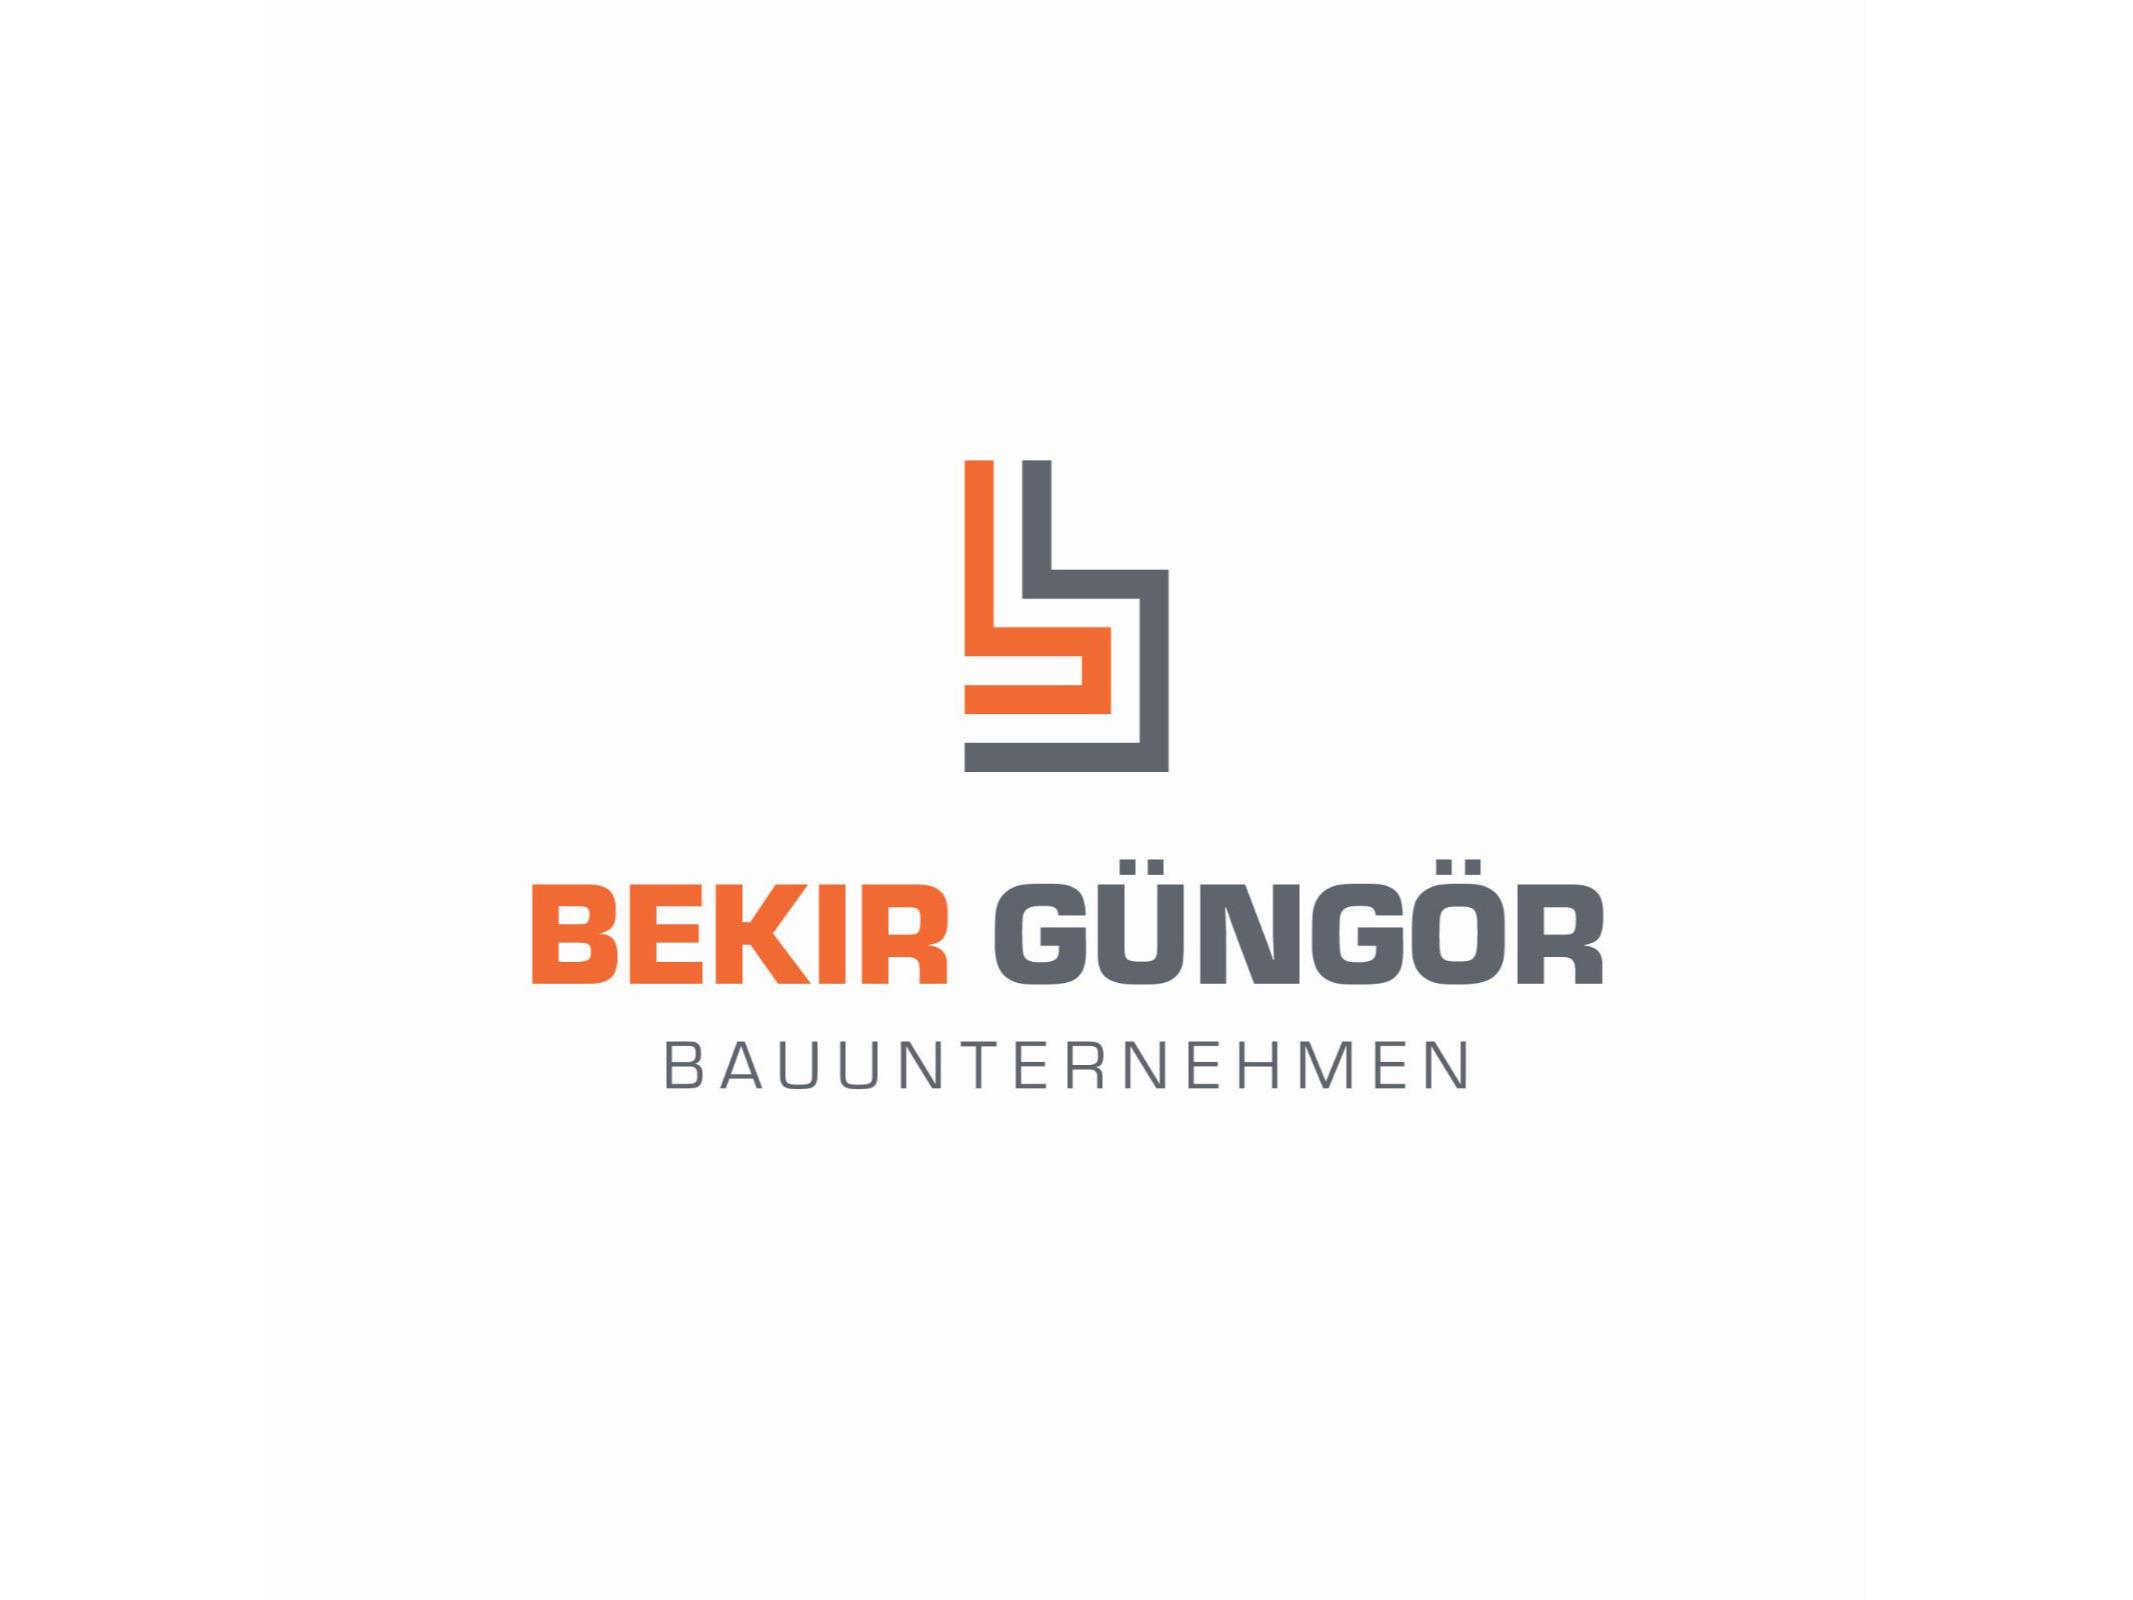 Bild der Bauunternehmen Bekir Güngör